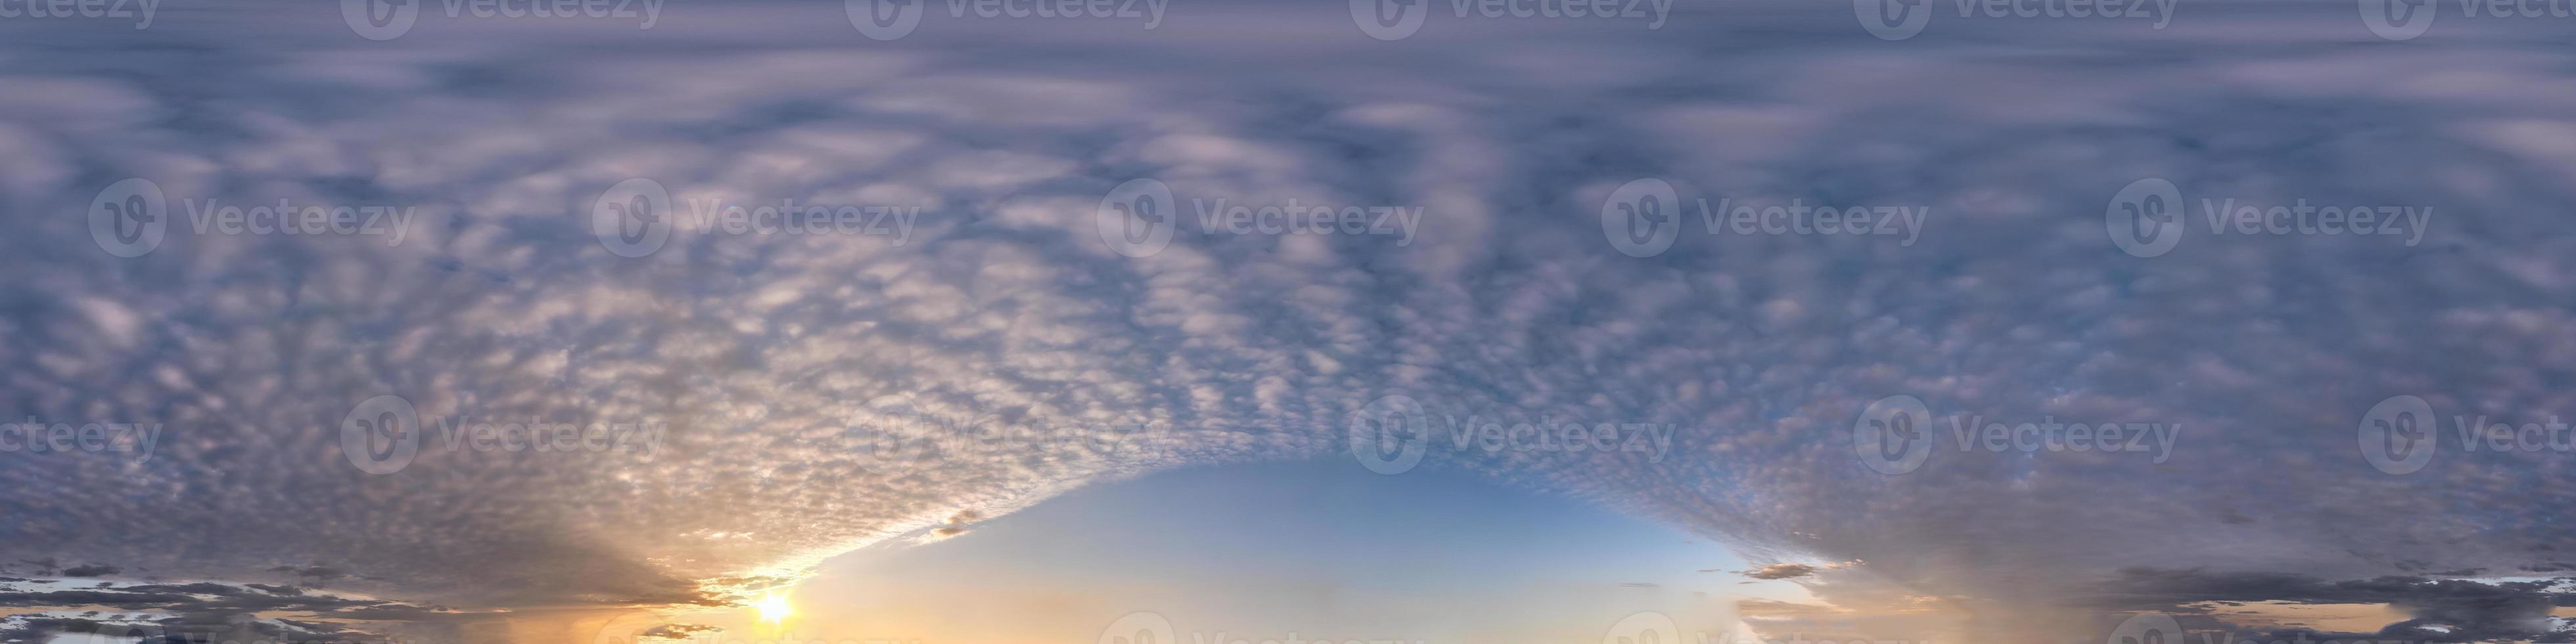 panorama hdri transparente 360 grados ángulo vista cielo azul con hermosas nubes de cúmulos esponjosas por la noche sin suelo con cenit para usar en gráficos 3d o desarrollo de juegos como cúpula del cielo o editar toma de drones foto